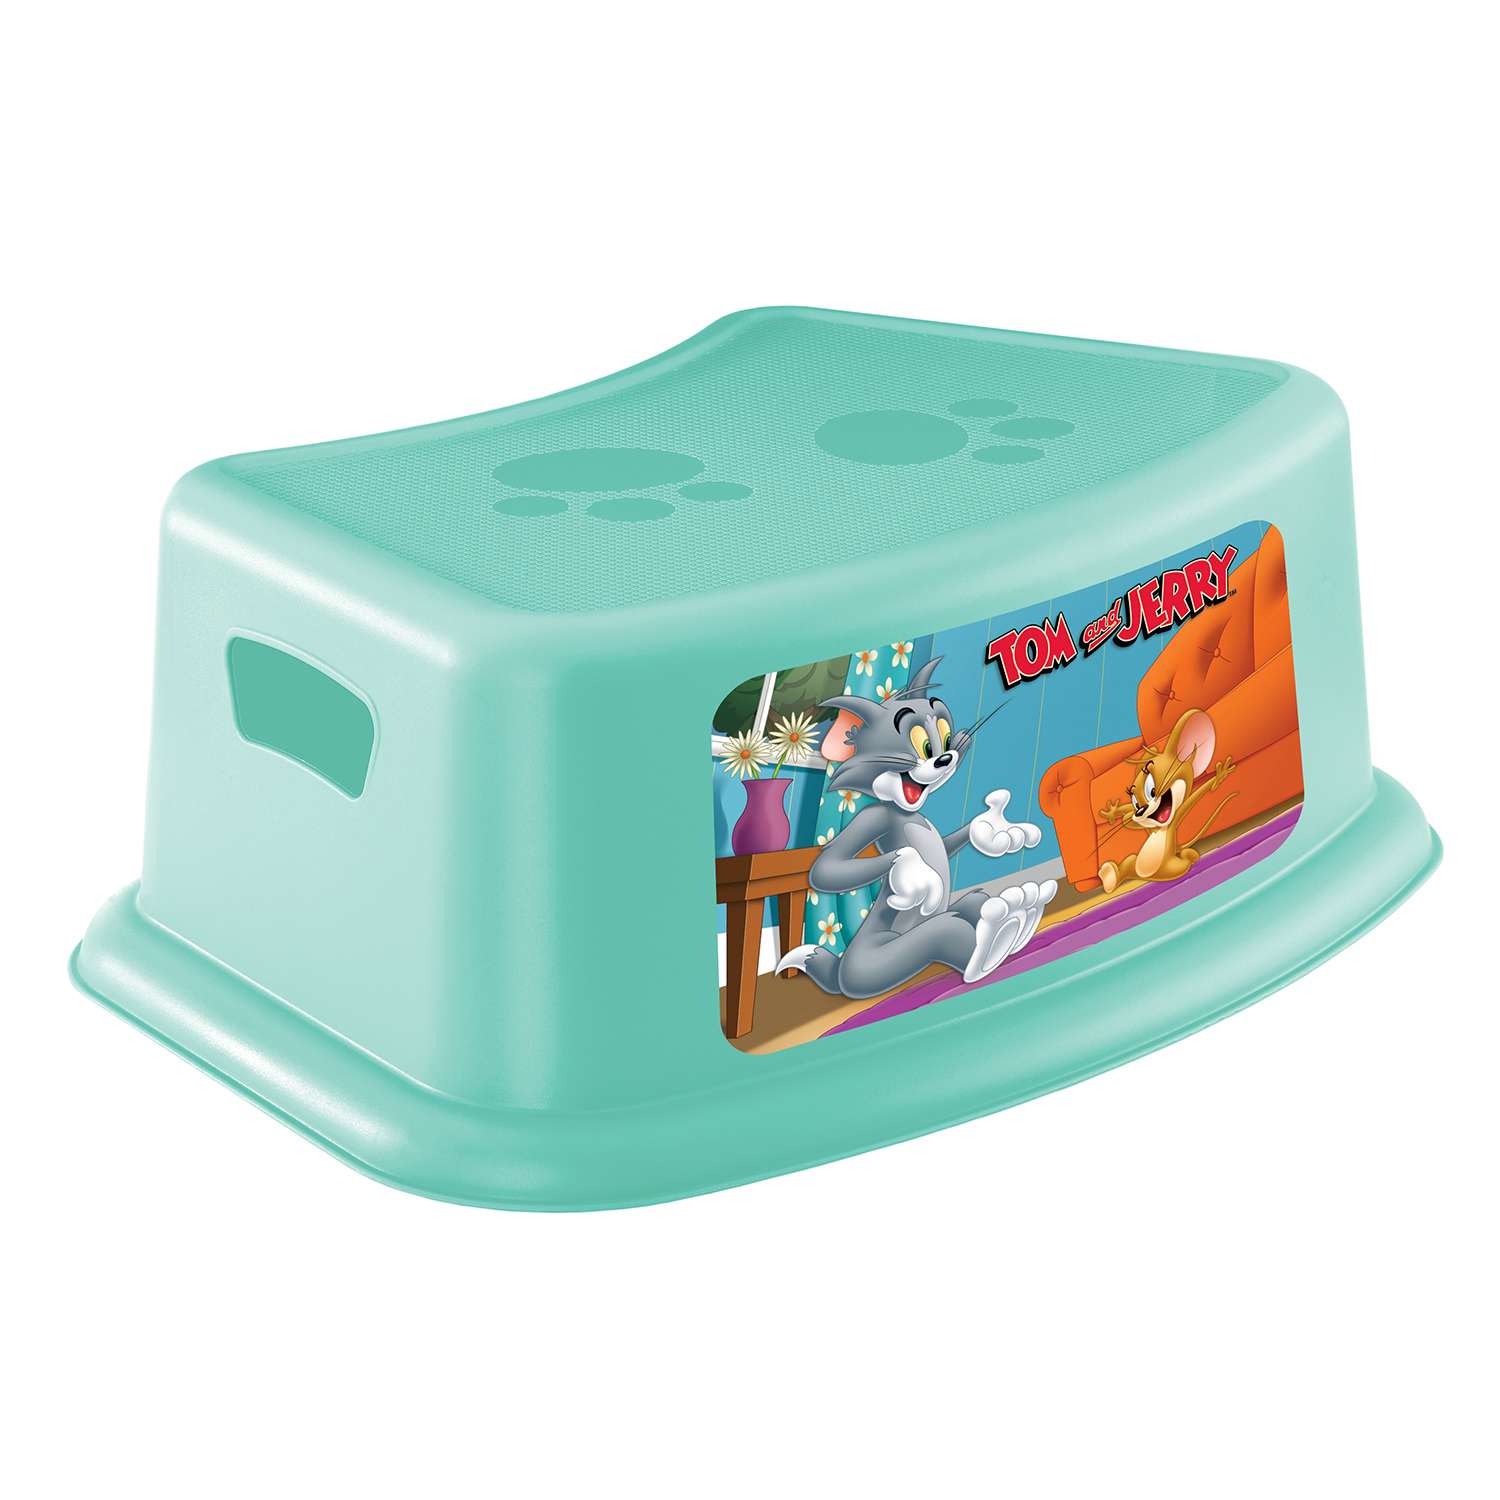 Подставка Пластишка Tom and Jerry детская с аппликацией Бирюзовая в ассортименте - фото 3